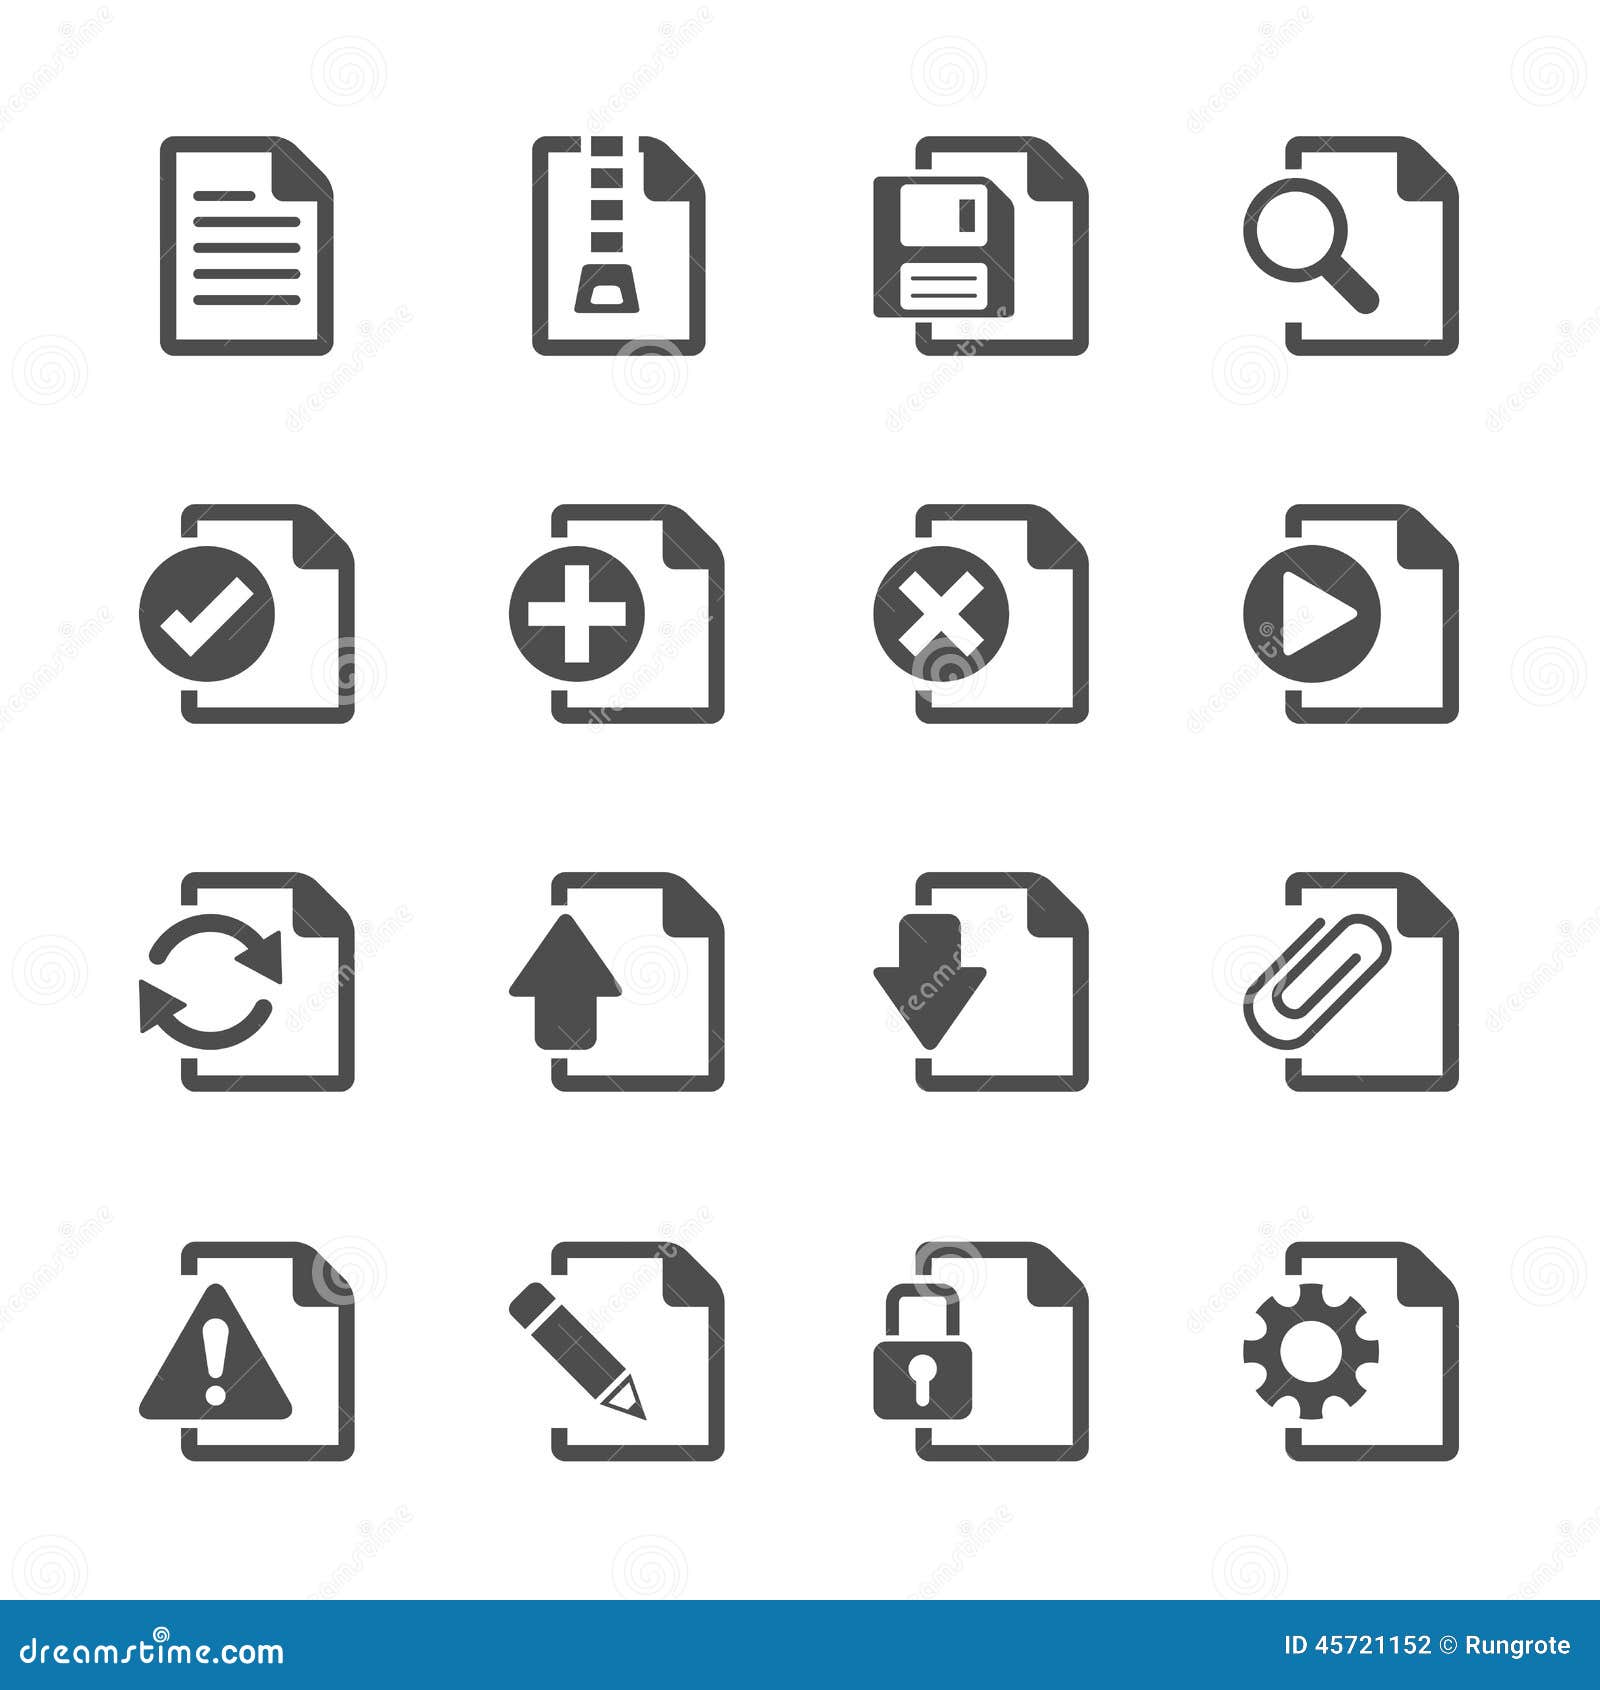 file document icon set, eps10